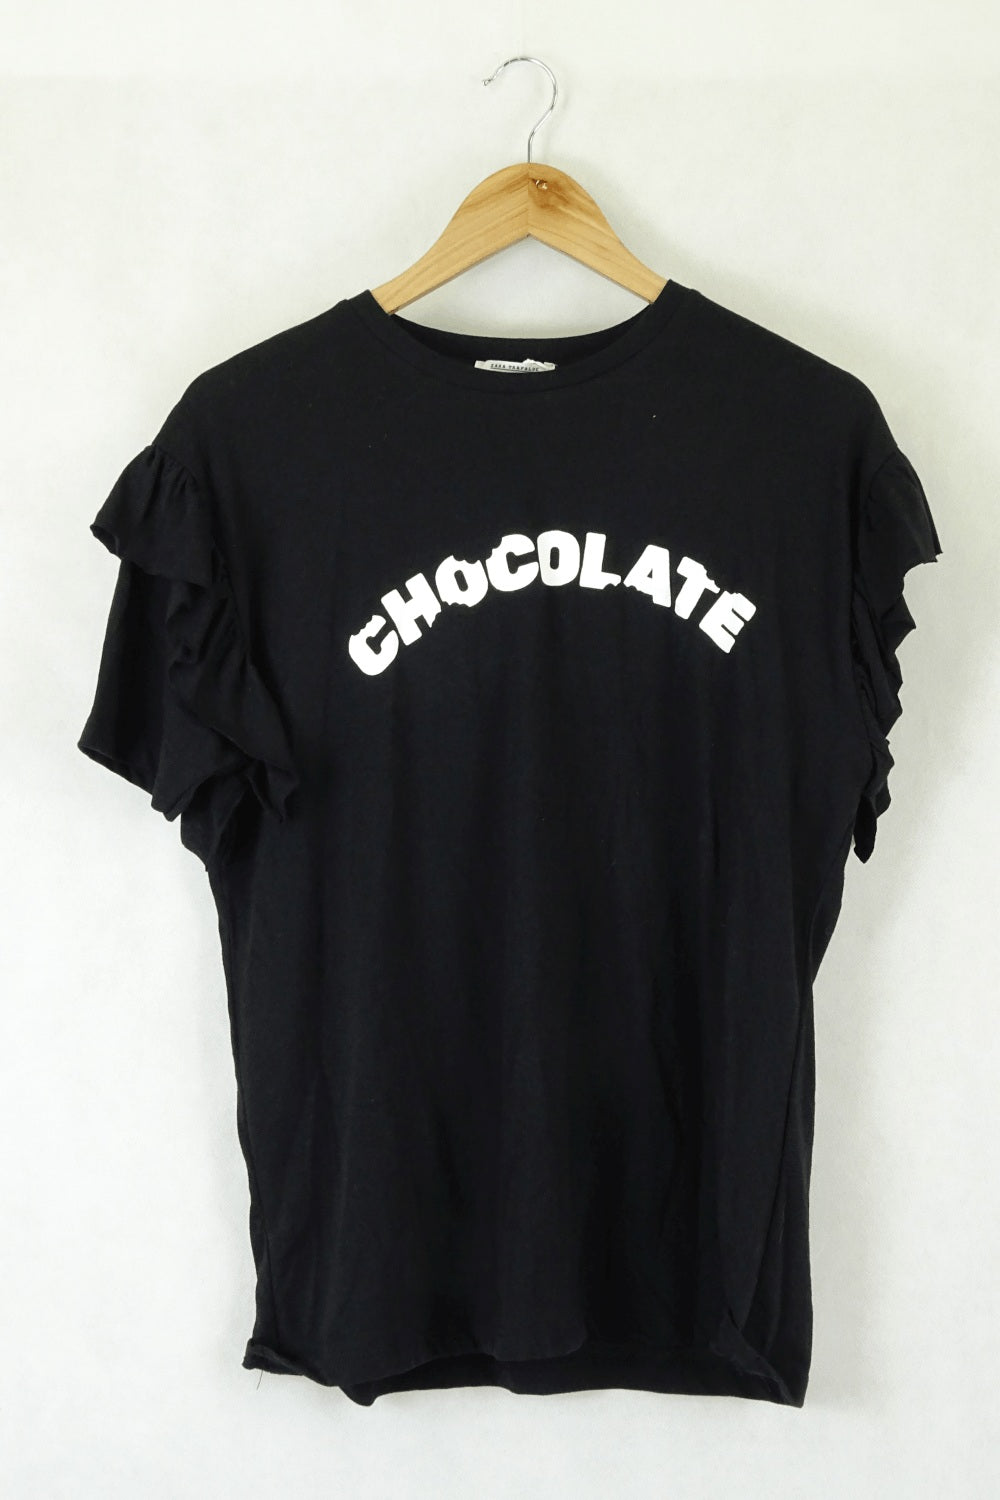 Zara Chocolate Black And White T-Shirt M